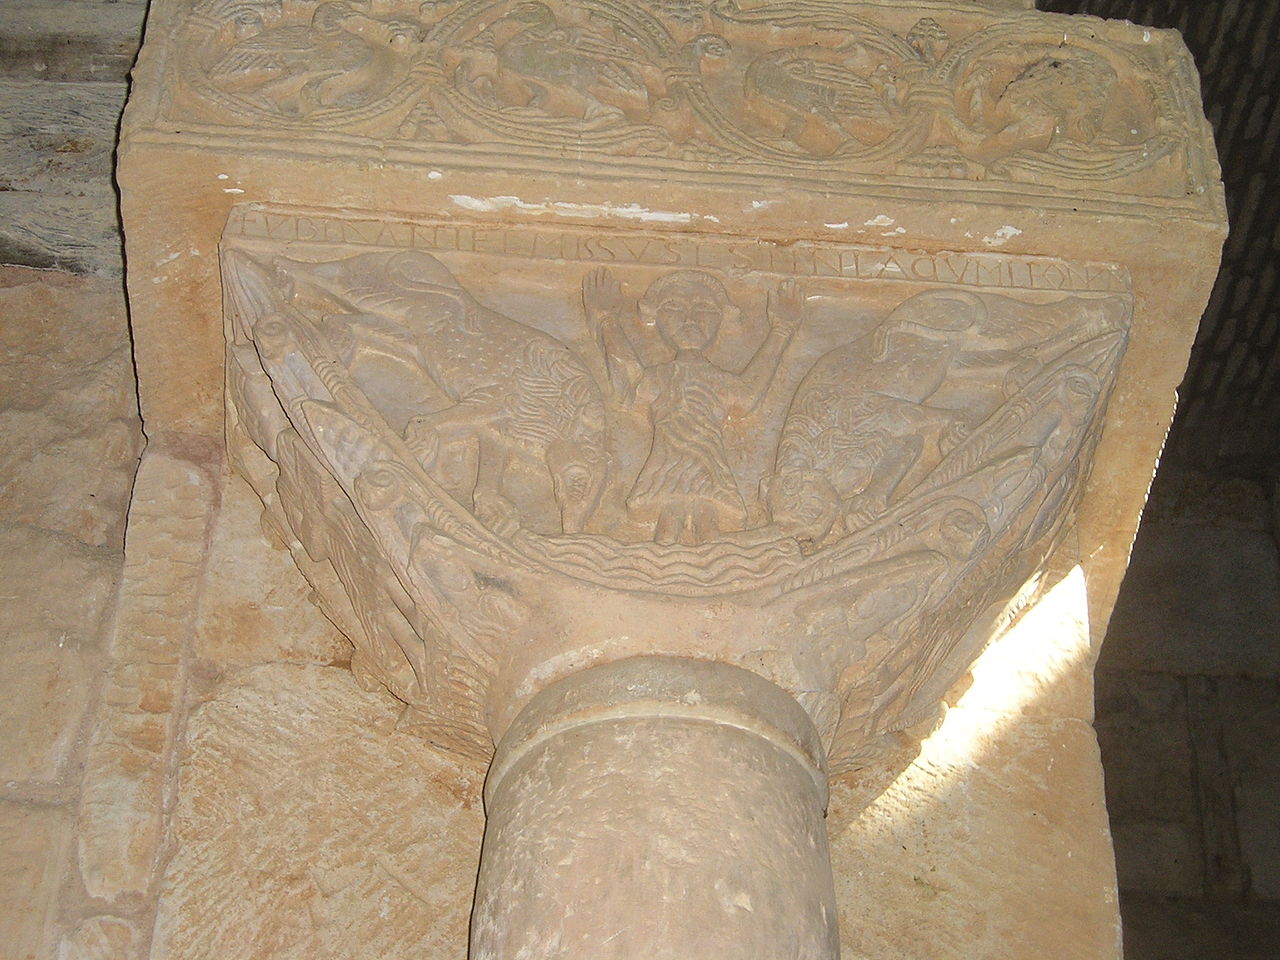 Daniel en el foso de los leones en otro de los capiteles de San Pedro de la Nave